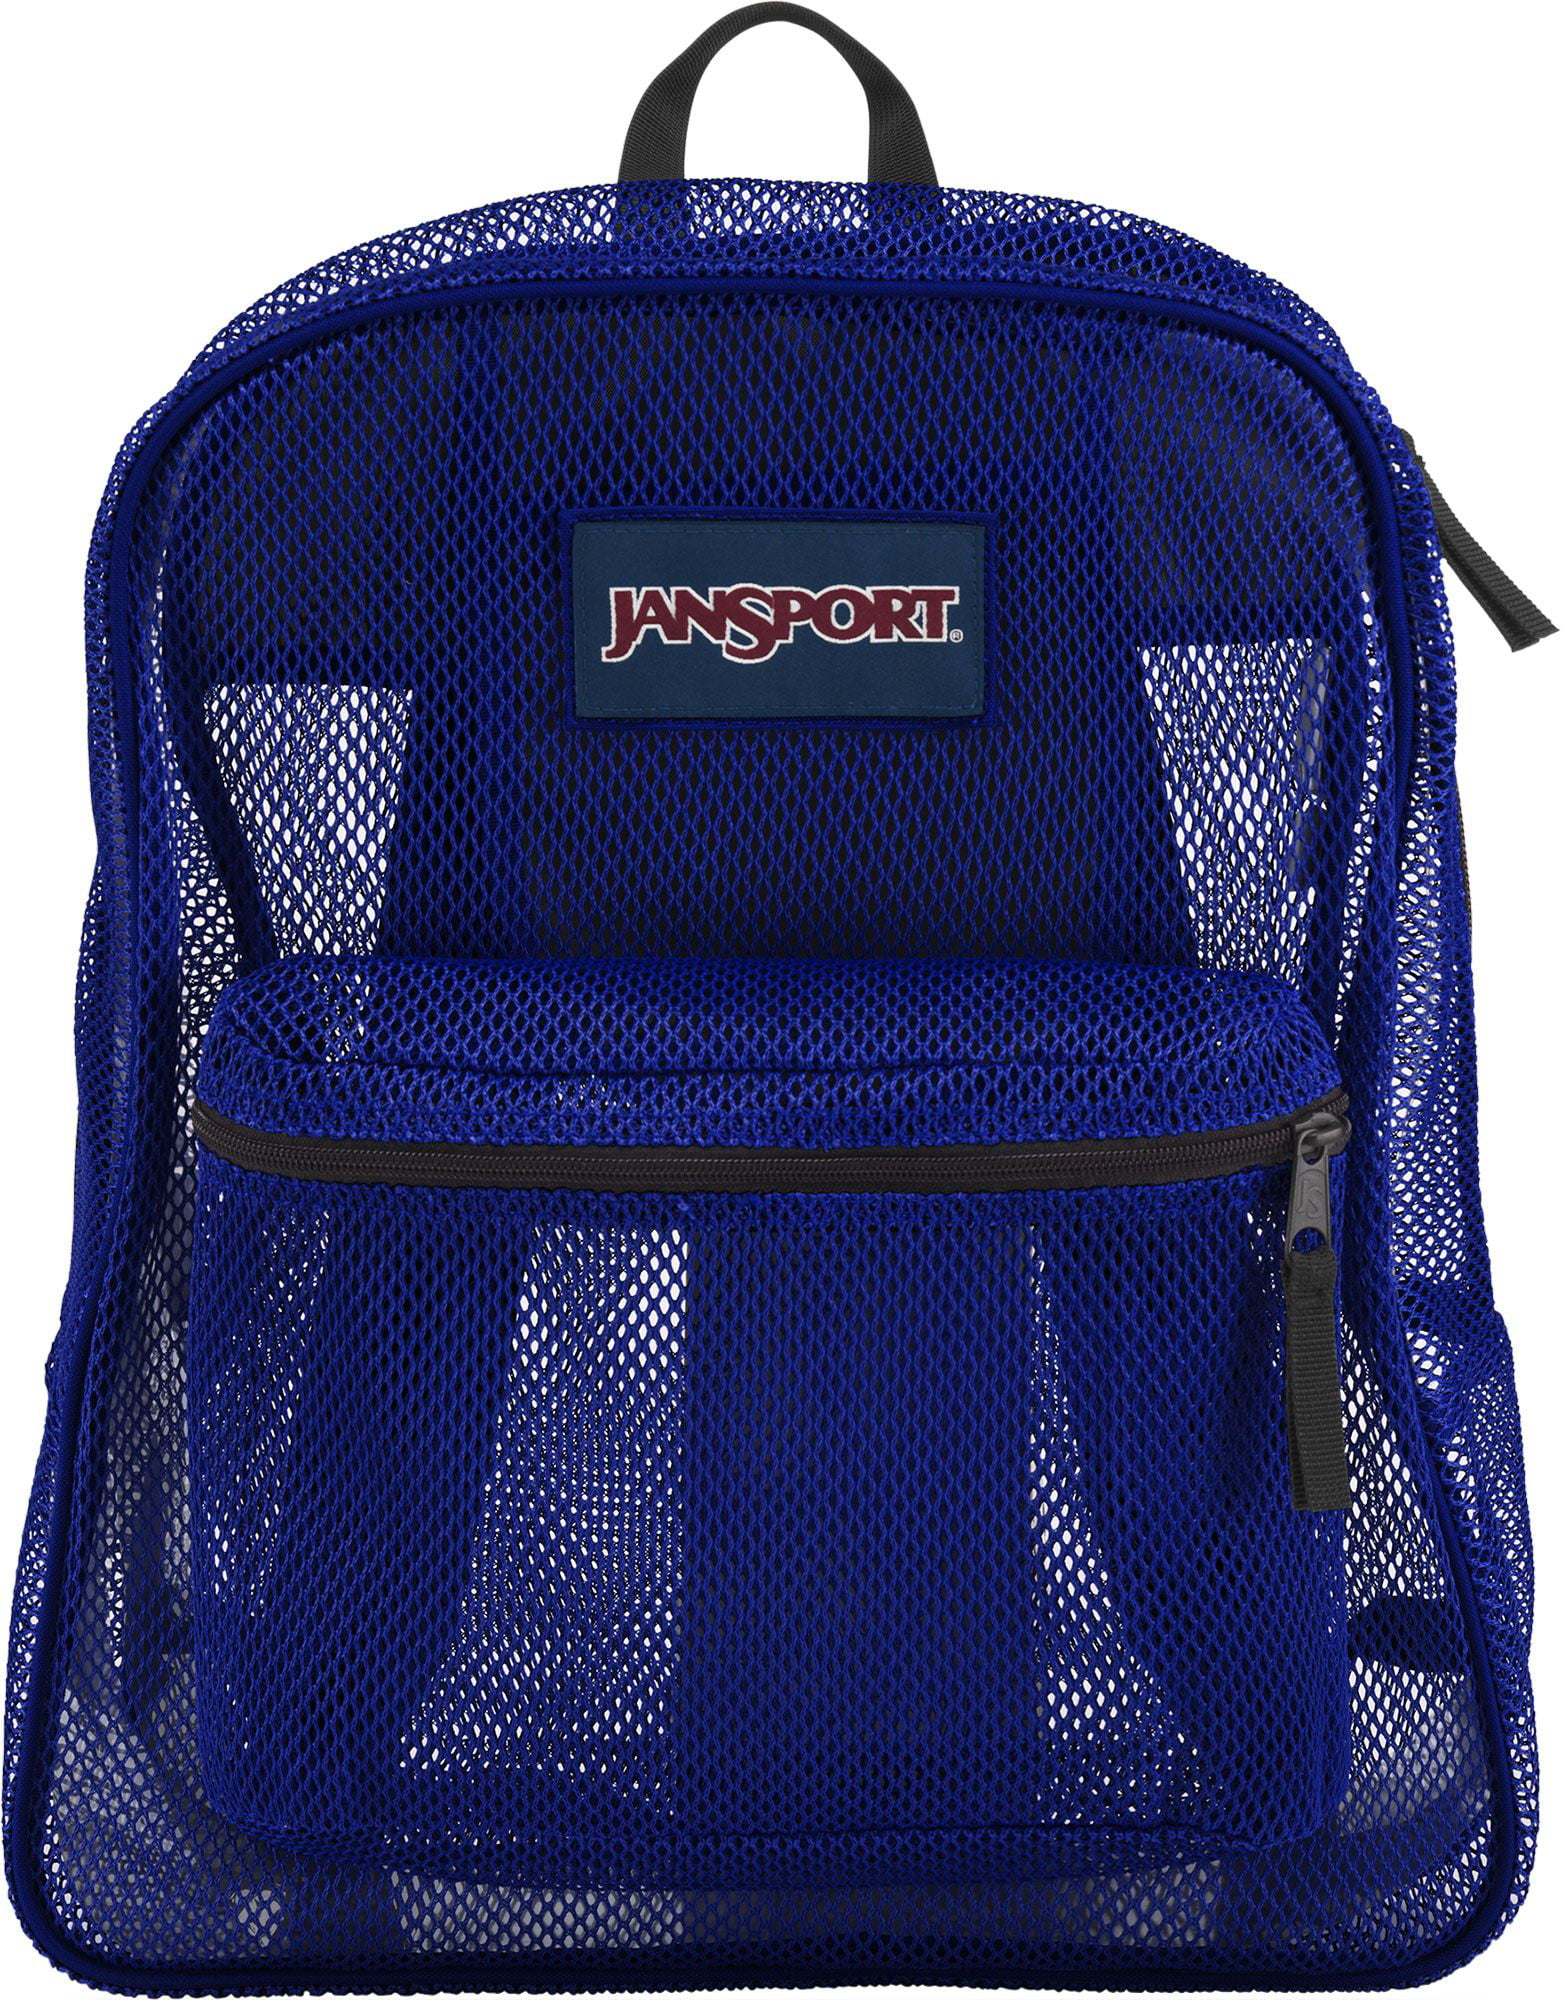 JanSport Mesh Pack Backpack - Walmart.com